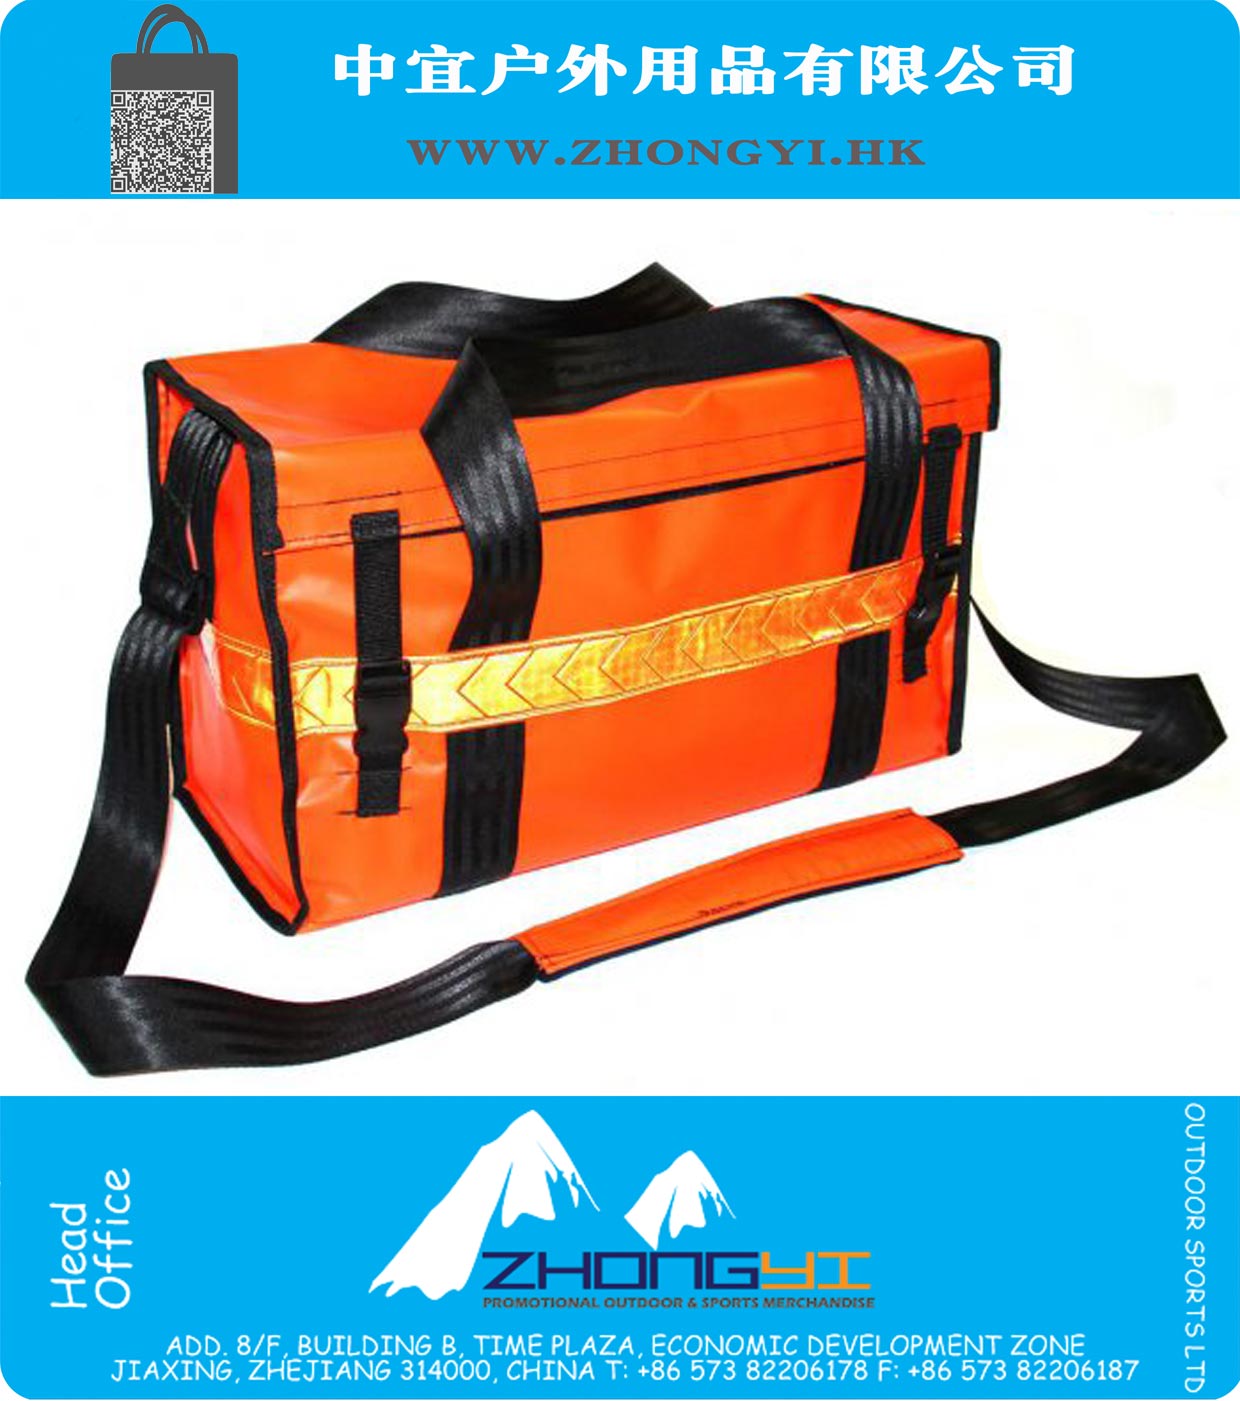 PVC de alta visibilidade de Resgate de Emergência Bag Ferramenta